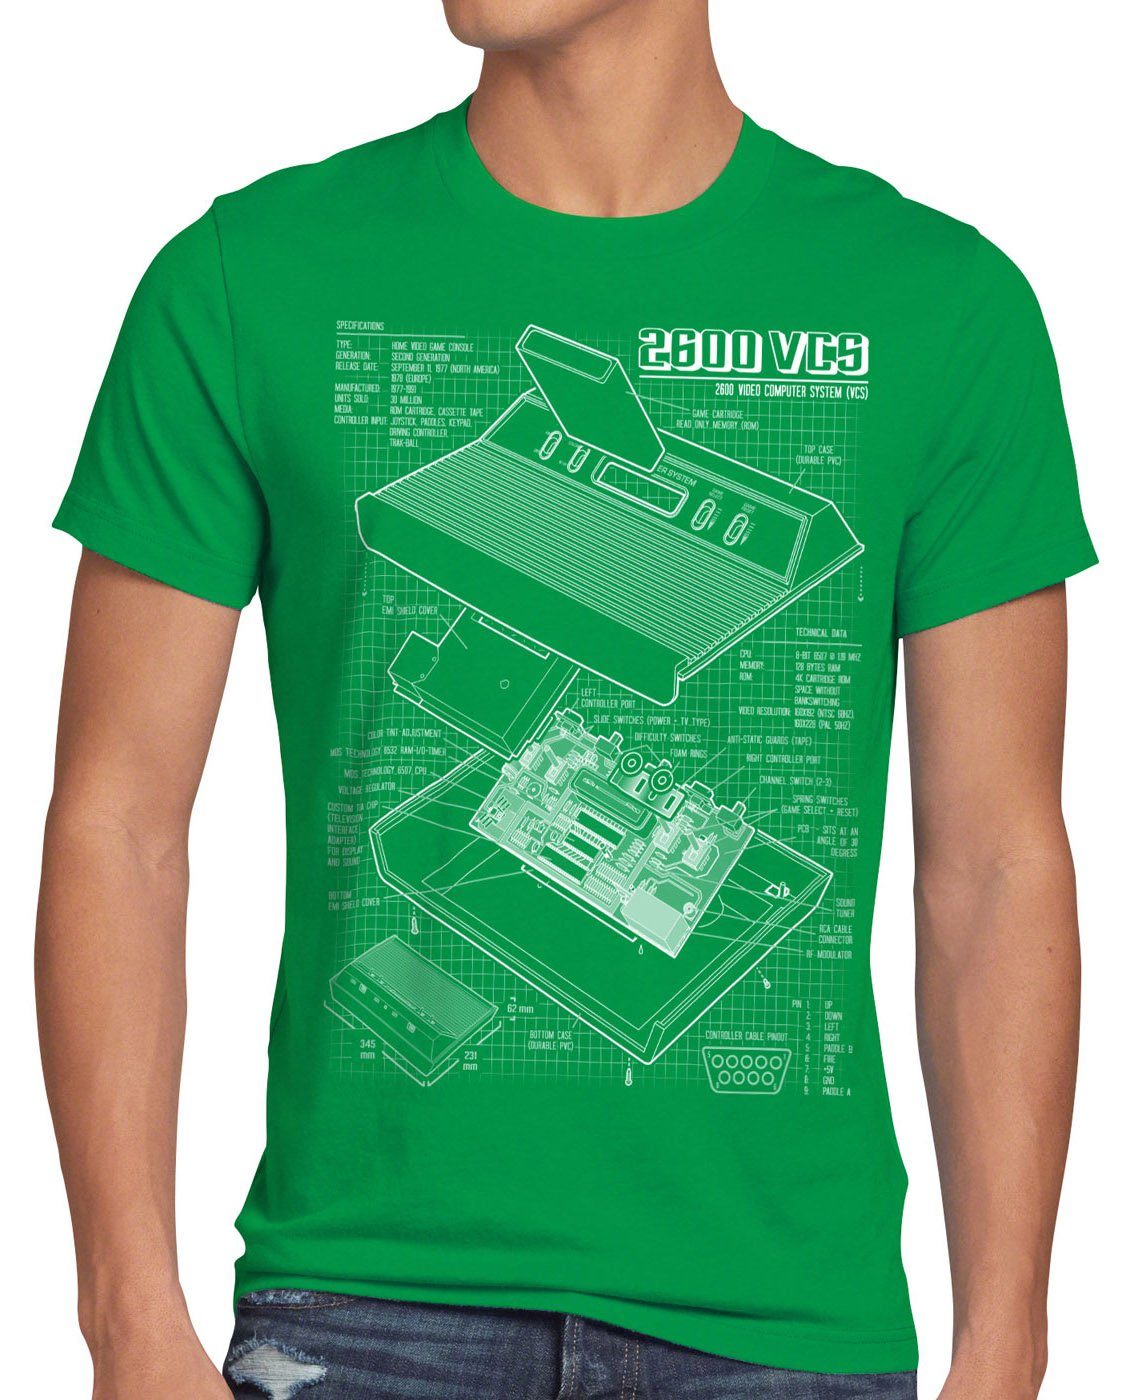 style3 Print-Shirt Herren T-Shirt VCS classic 2600 gamer Blaupause Heimcomputer grün